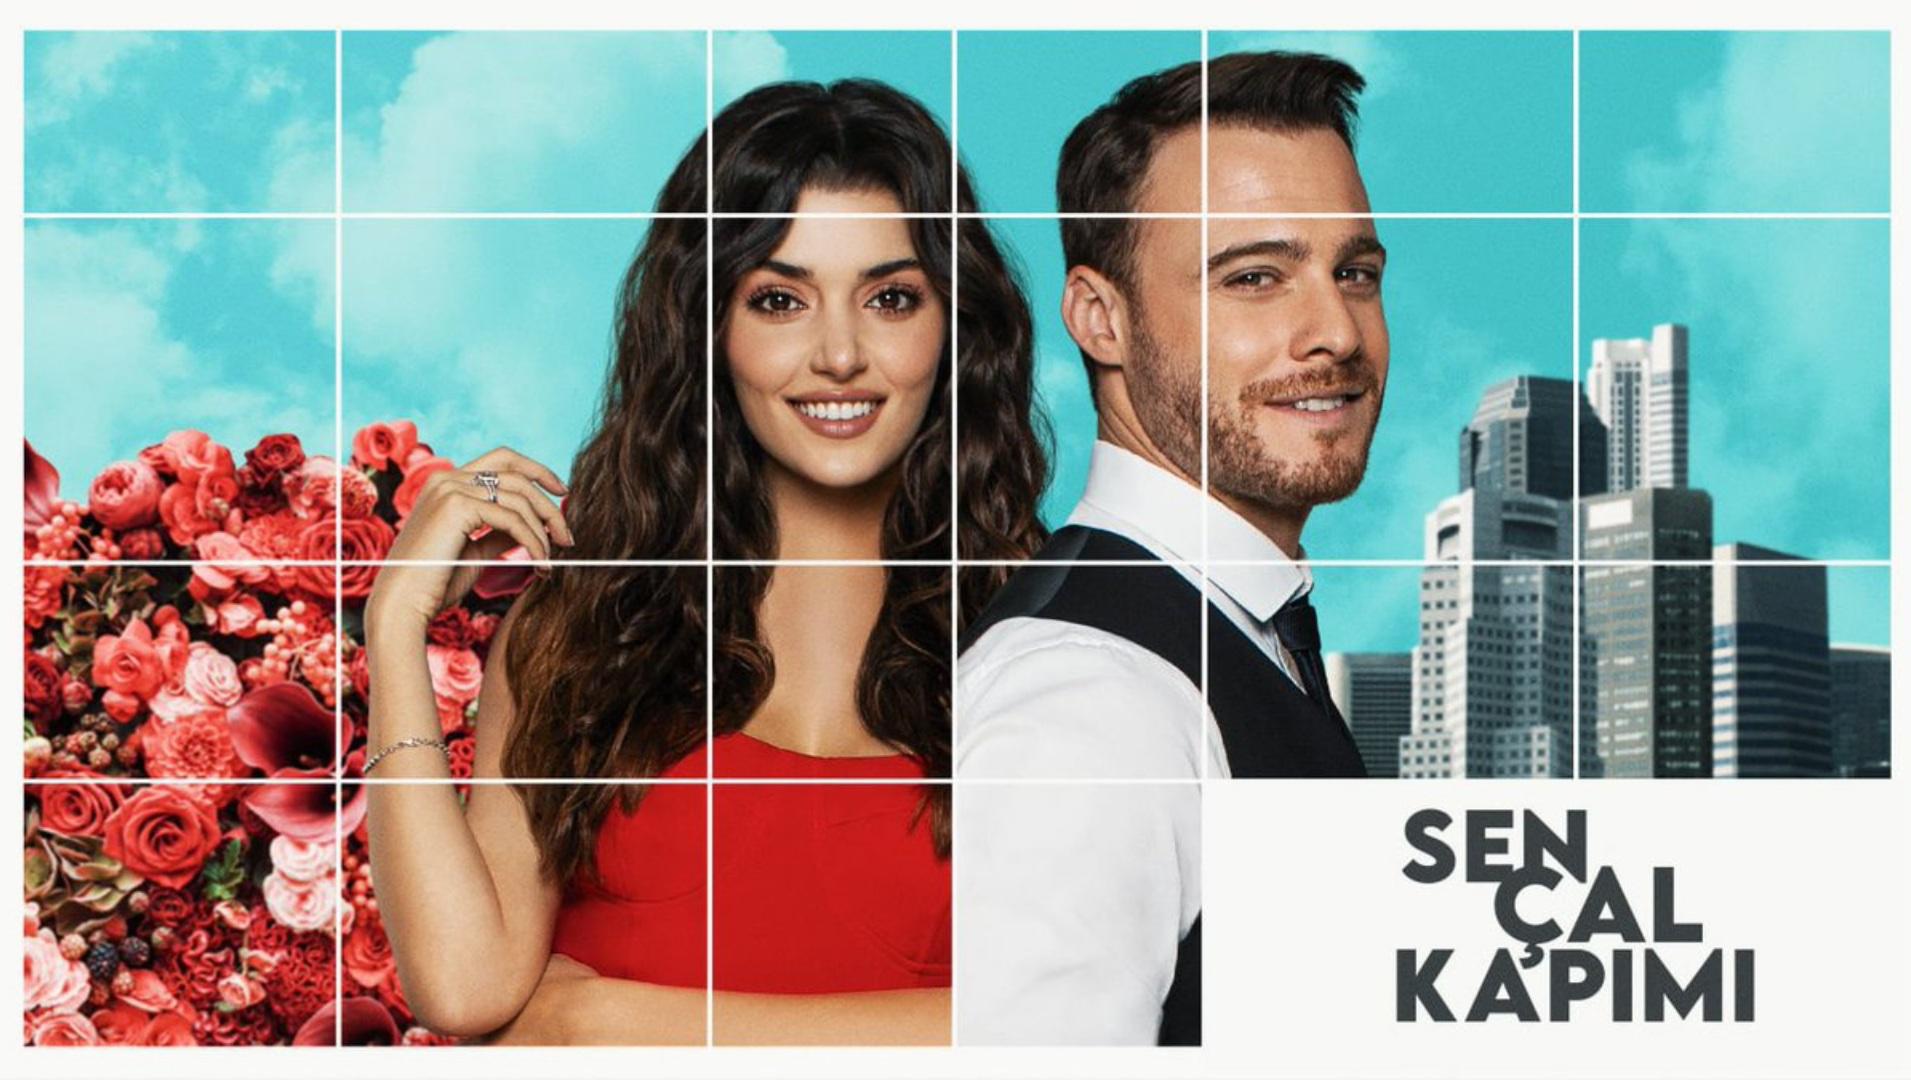 مسلسل أنت اطرق بابي Sen Çal Kapimi أفضل مسلسلات تركية في عام 2020